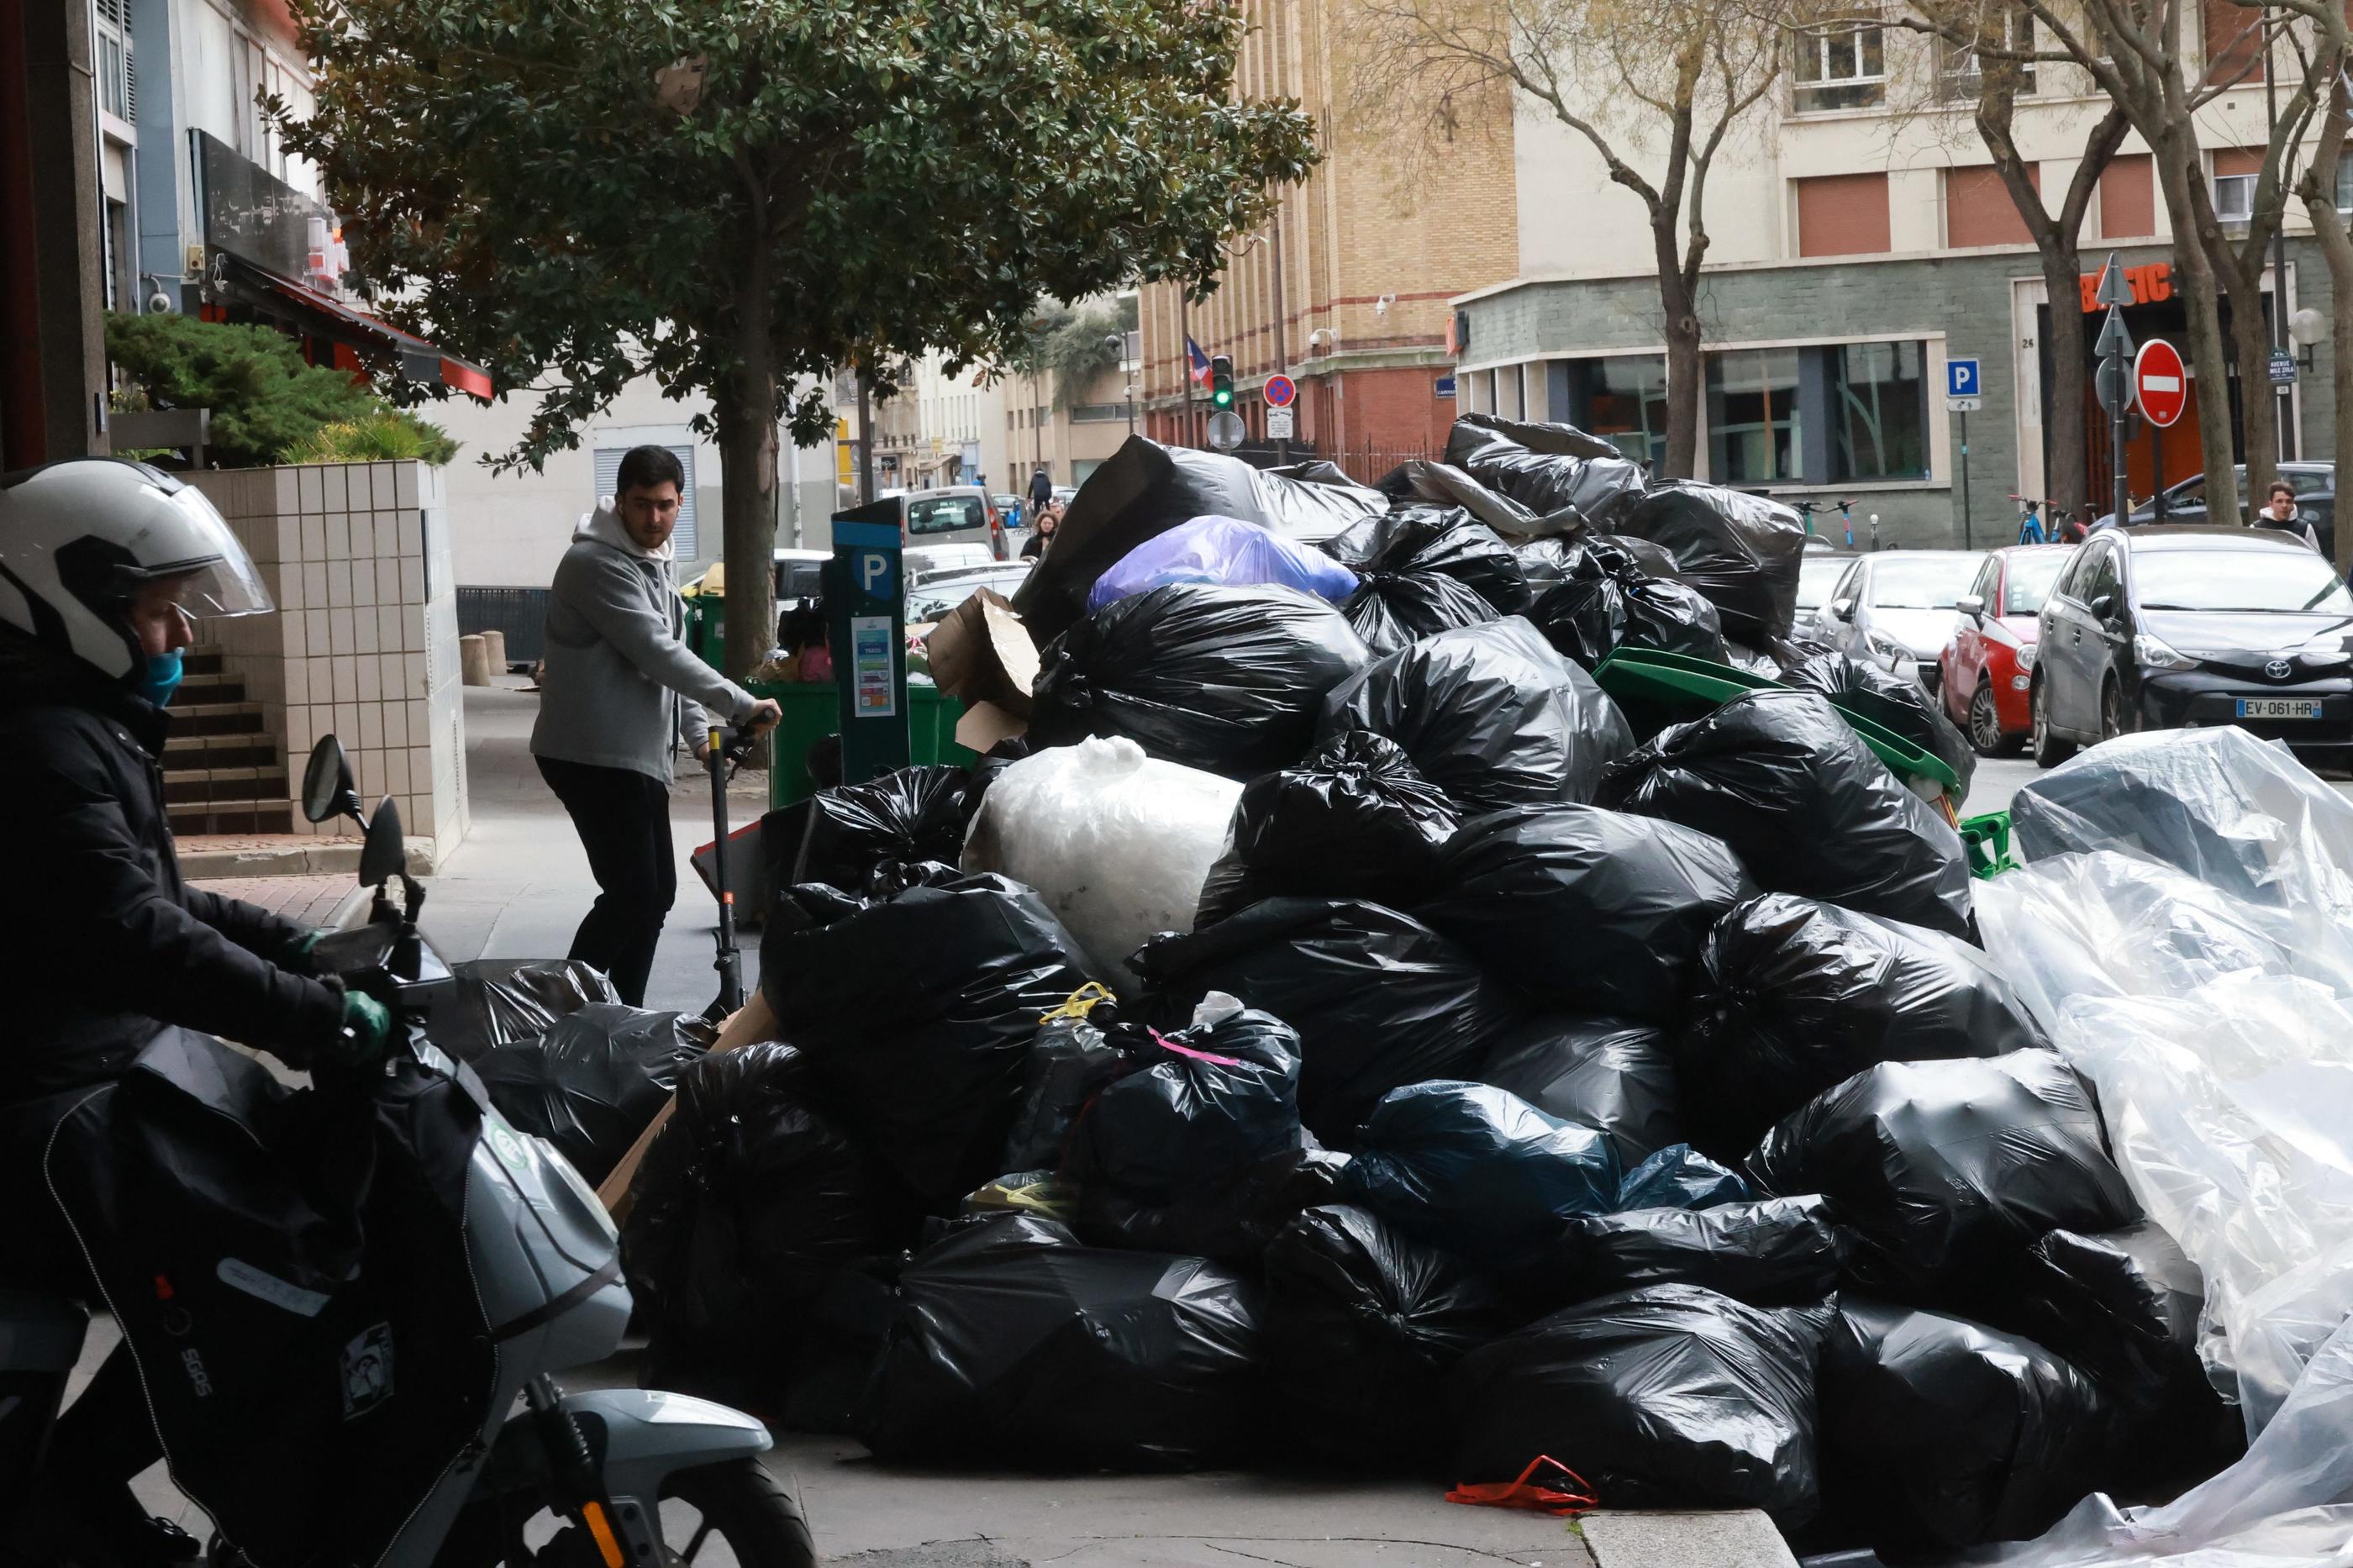 «Si Macron retire sa réforme, en quatre à cinq jours, on vide la ville de toutes ses ordures», indique un éboueur, alors que les poubelles s'y entassent toujours, comme ici, la rue de Javel, ce samedi. LP/Philippe Lavieille